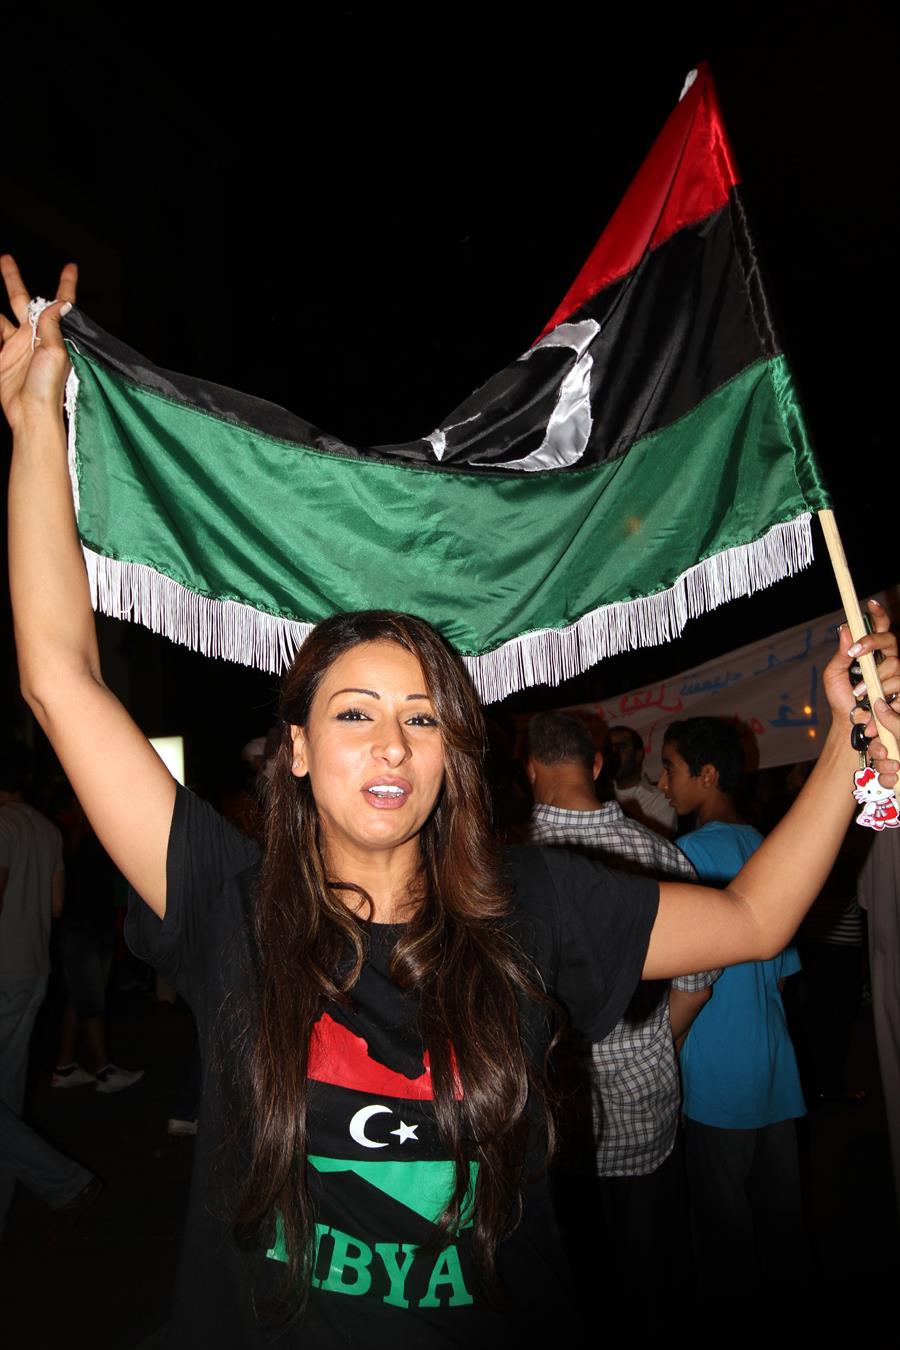 المطربة أسماء سليم لـ"بوابة الوسط": أثق في الشعب الليبي